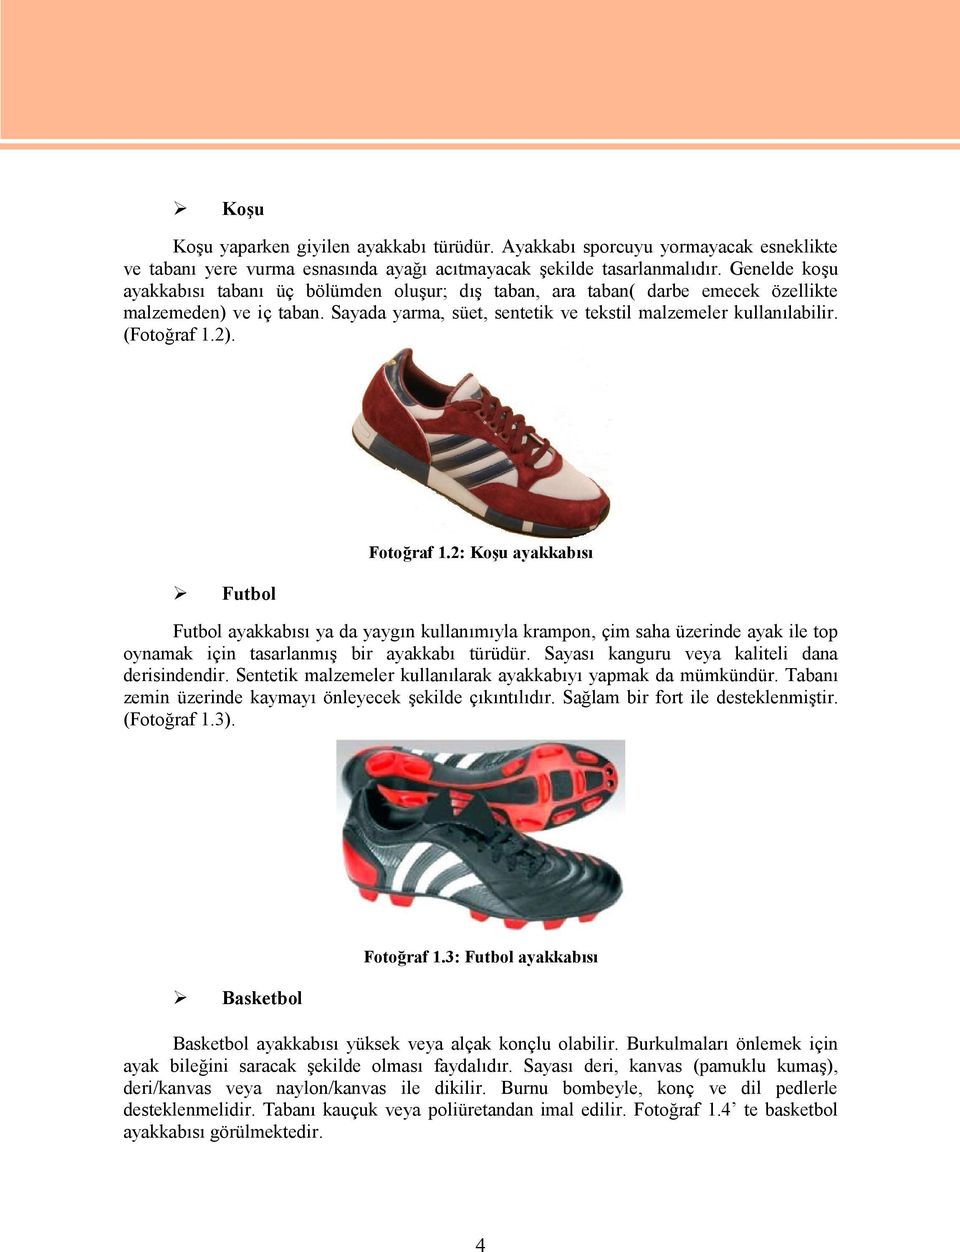 2). Futbol Fotoğraf 1.2: Koşu ayakkabısı Futbol ayakkabısı ya da yaygın kullanımıyla krampon, çim saha üzerinde ayak ile top oynamak için tasarlanmış bir ayakkabı türüdür.